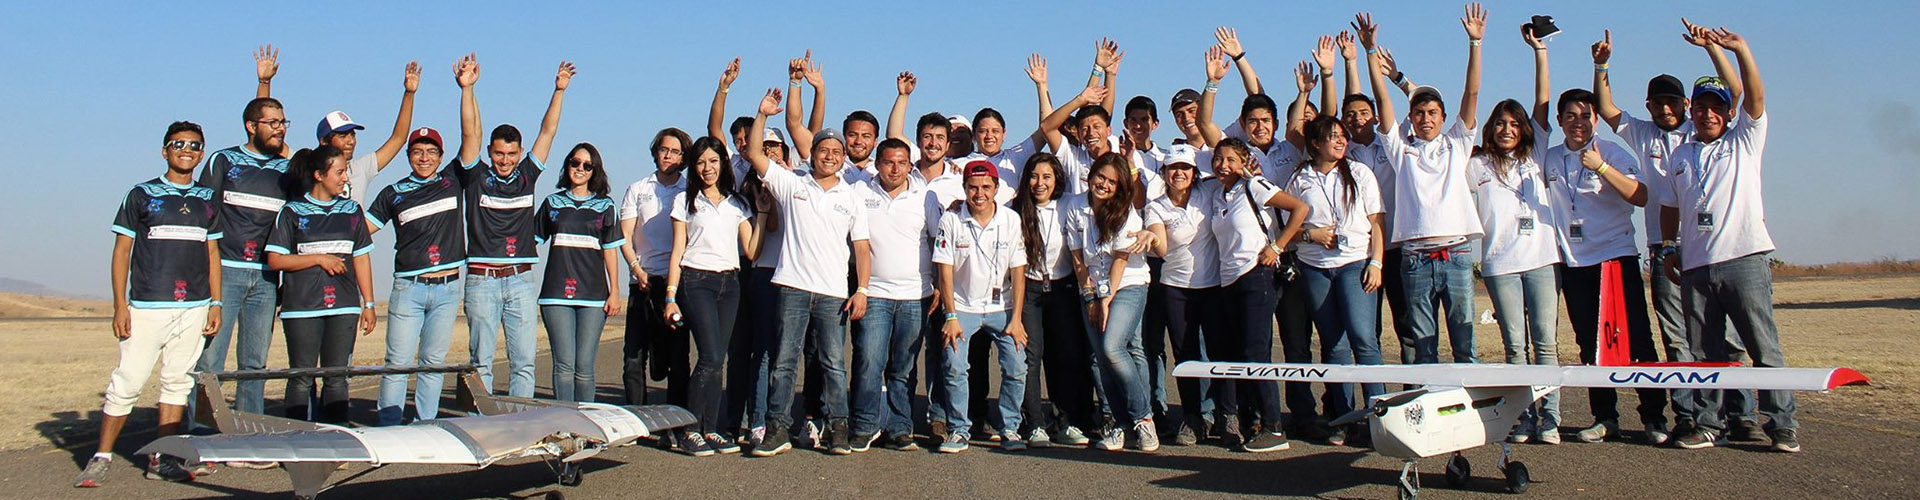 Equipos Representativos Unaq Universidad Aeronáutica En Querétaro 3568